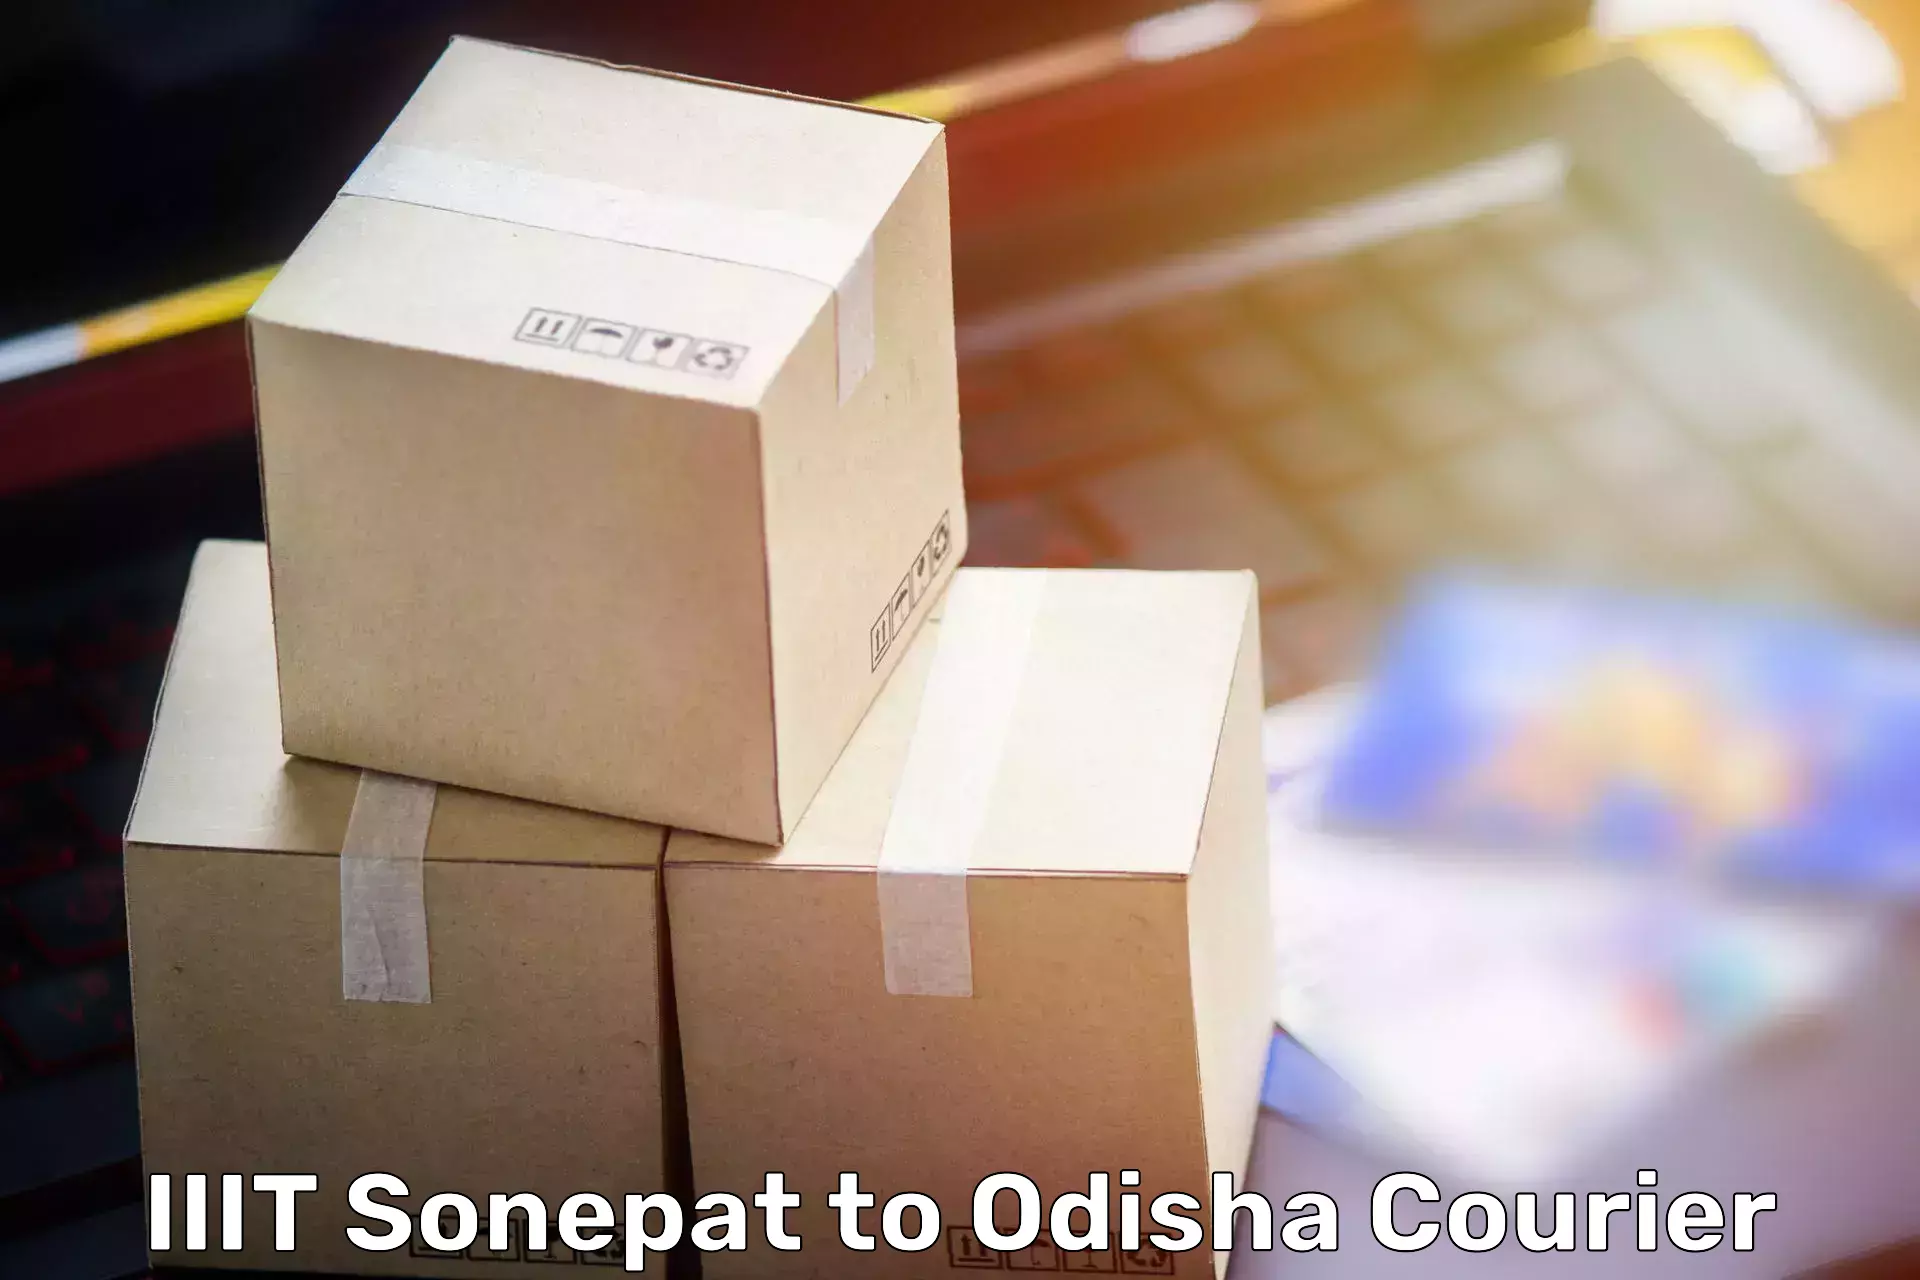 Efficient moving company IIIT Sonepat to Agarpada